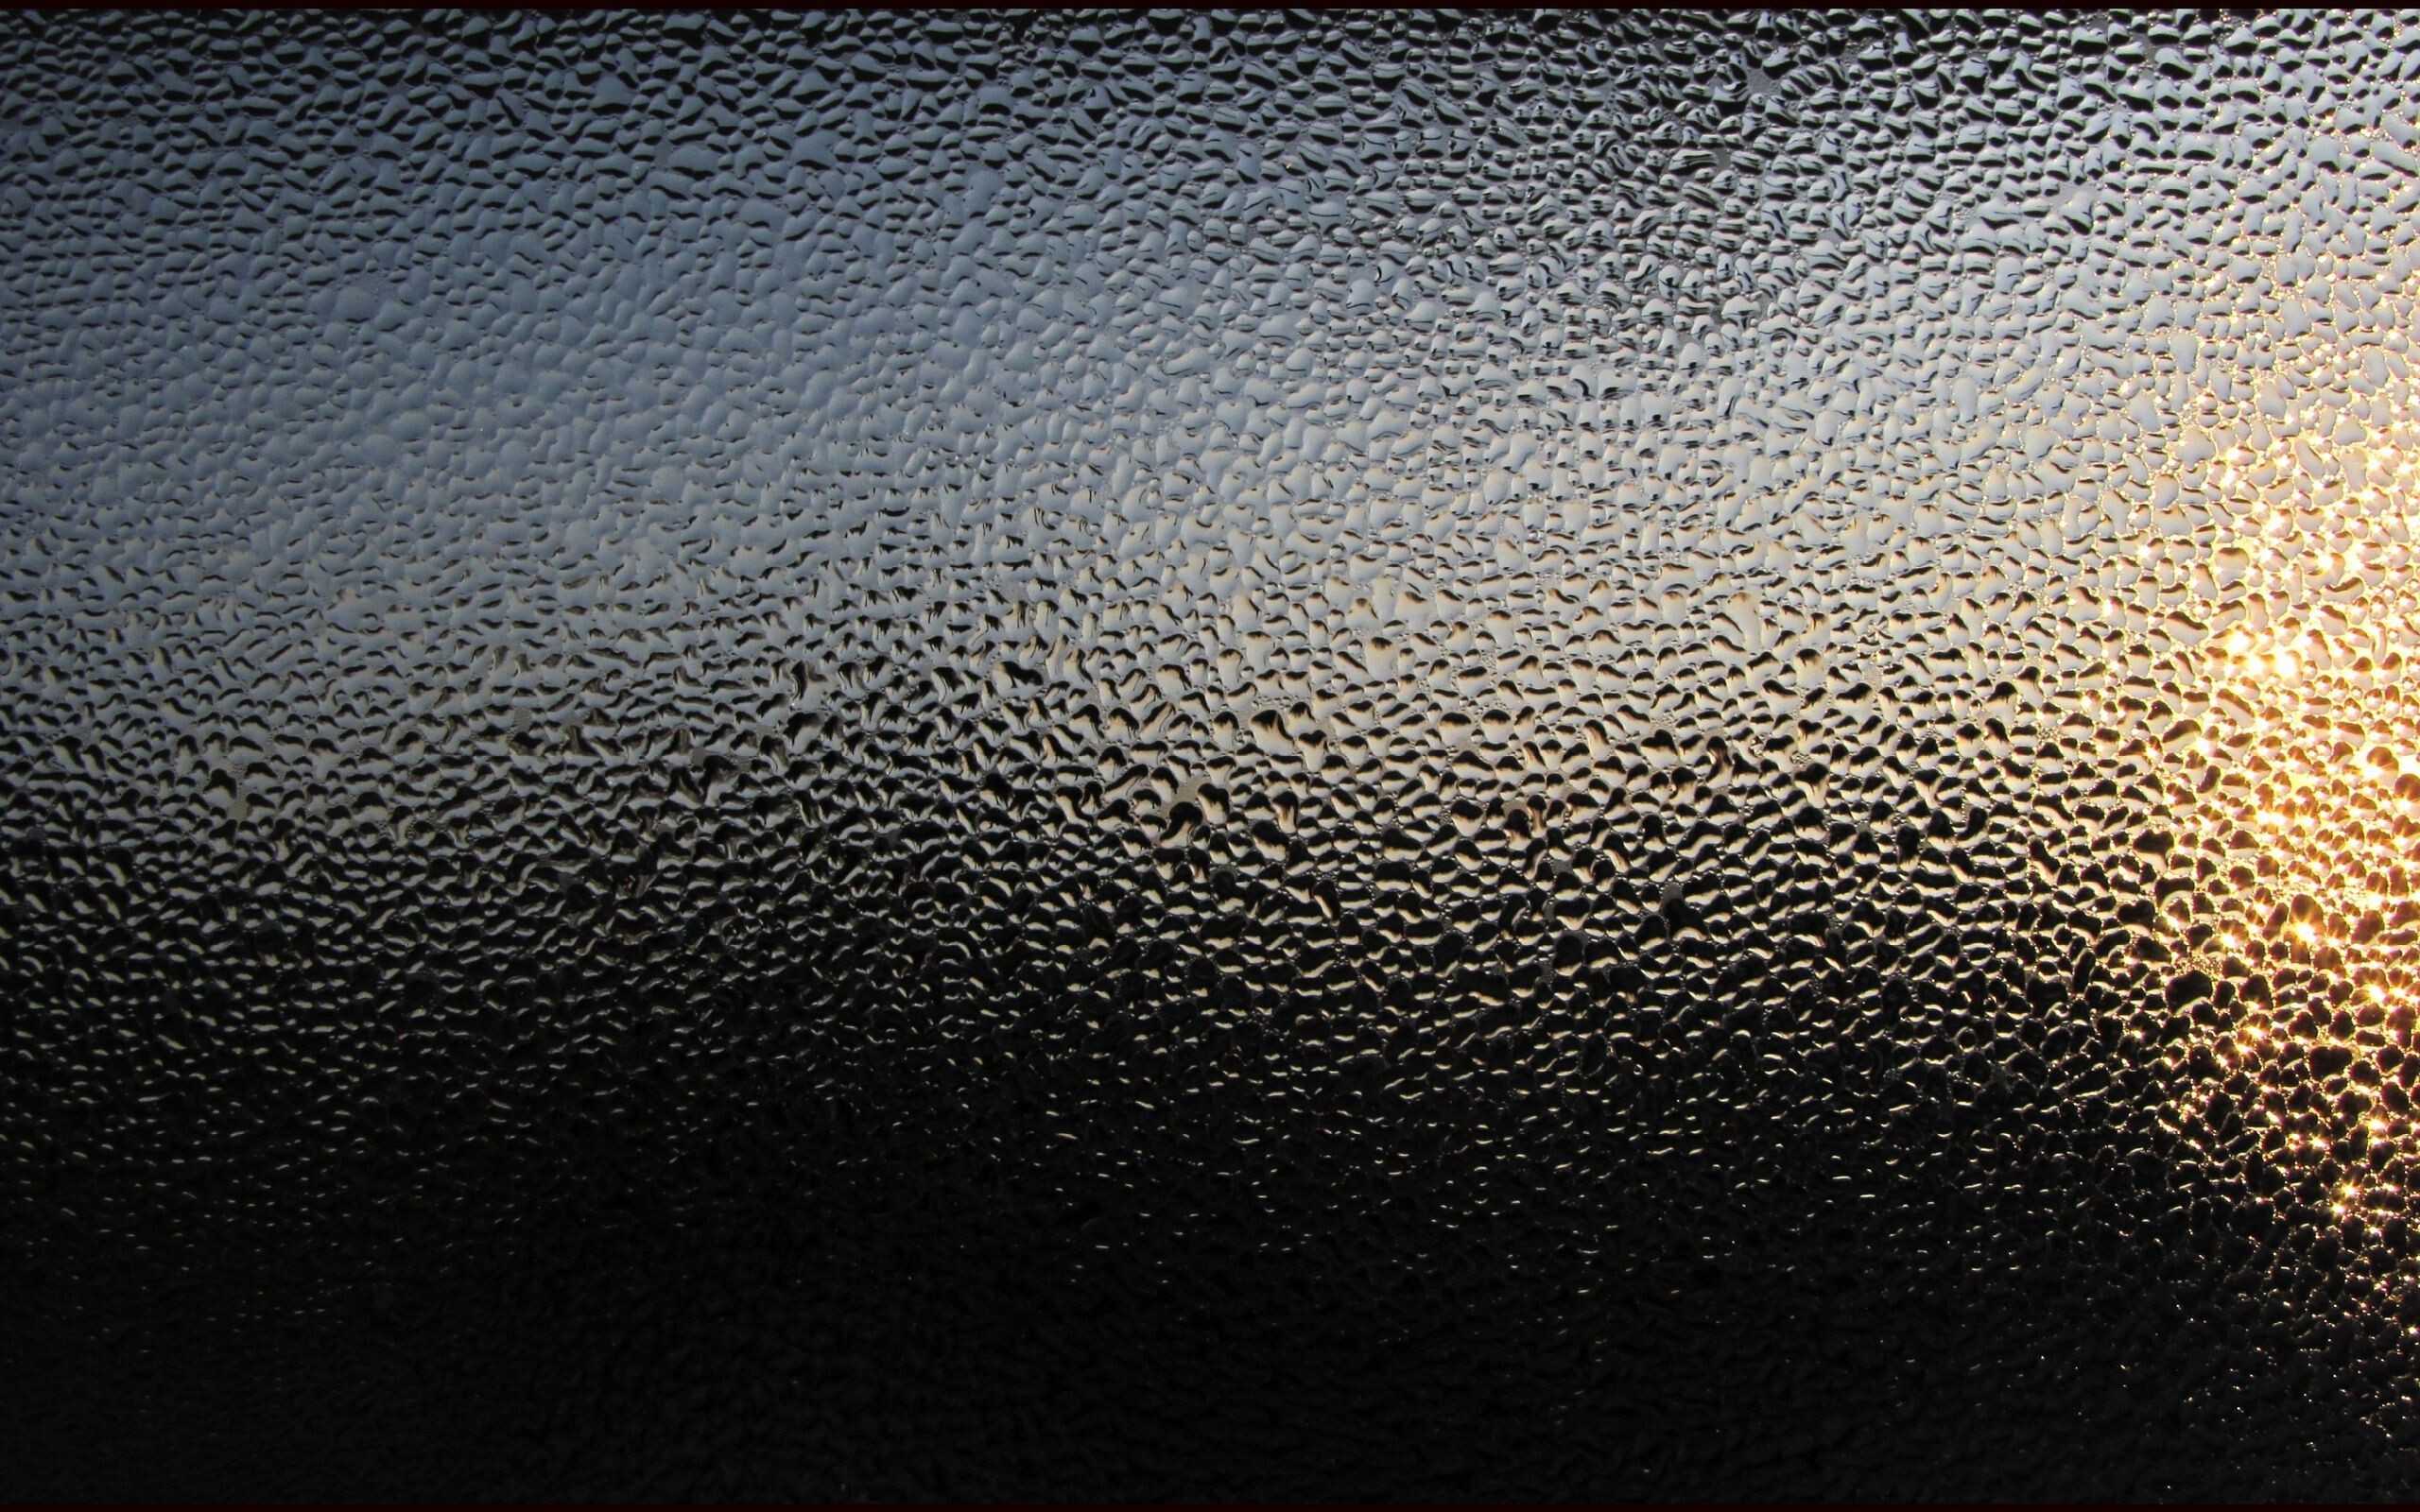 Glass: Blur, Water drops, An amorphous material often derived from molten silica. 2560x1600 HD Wallpaper.